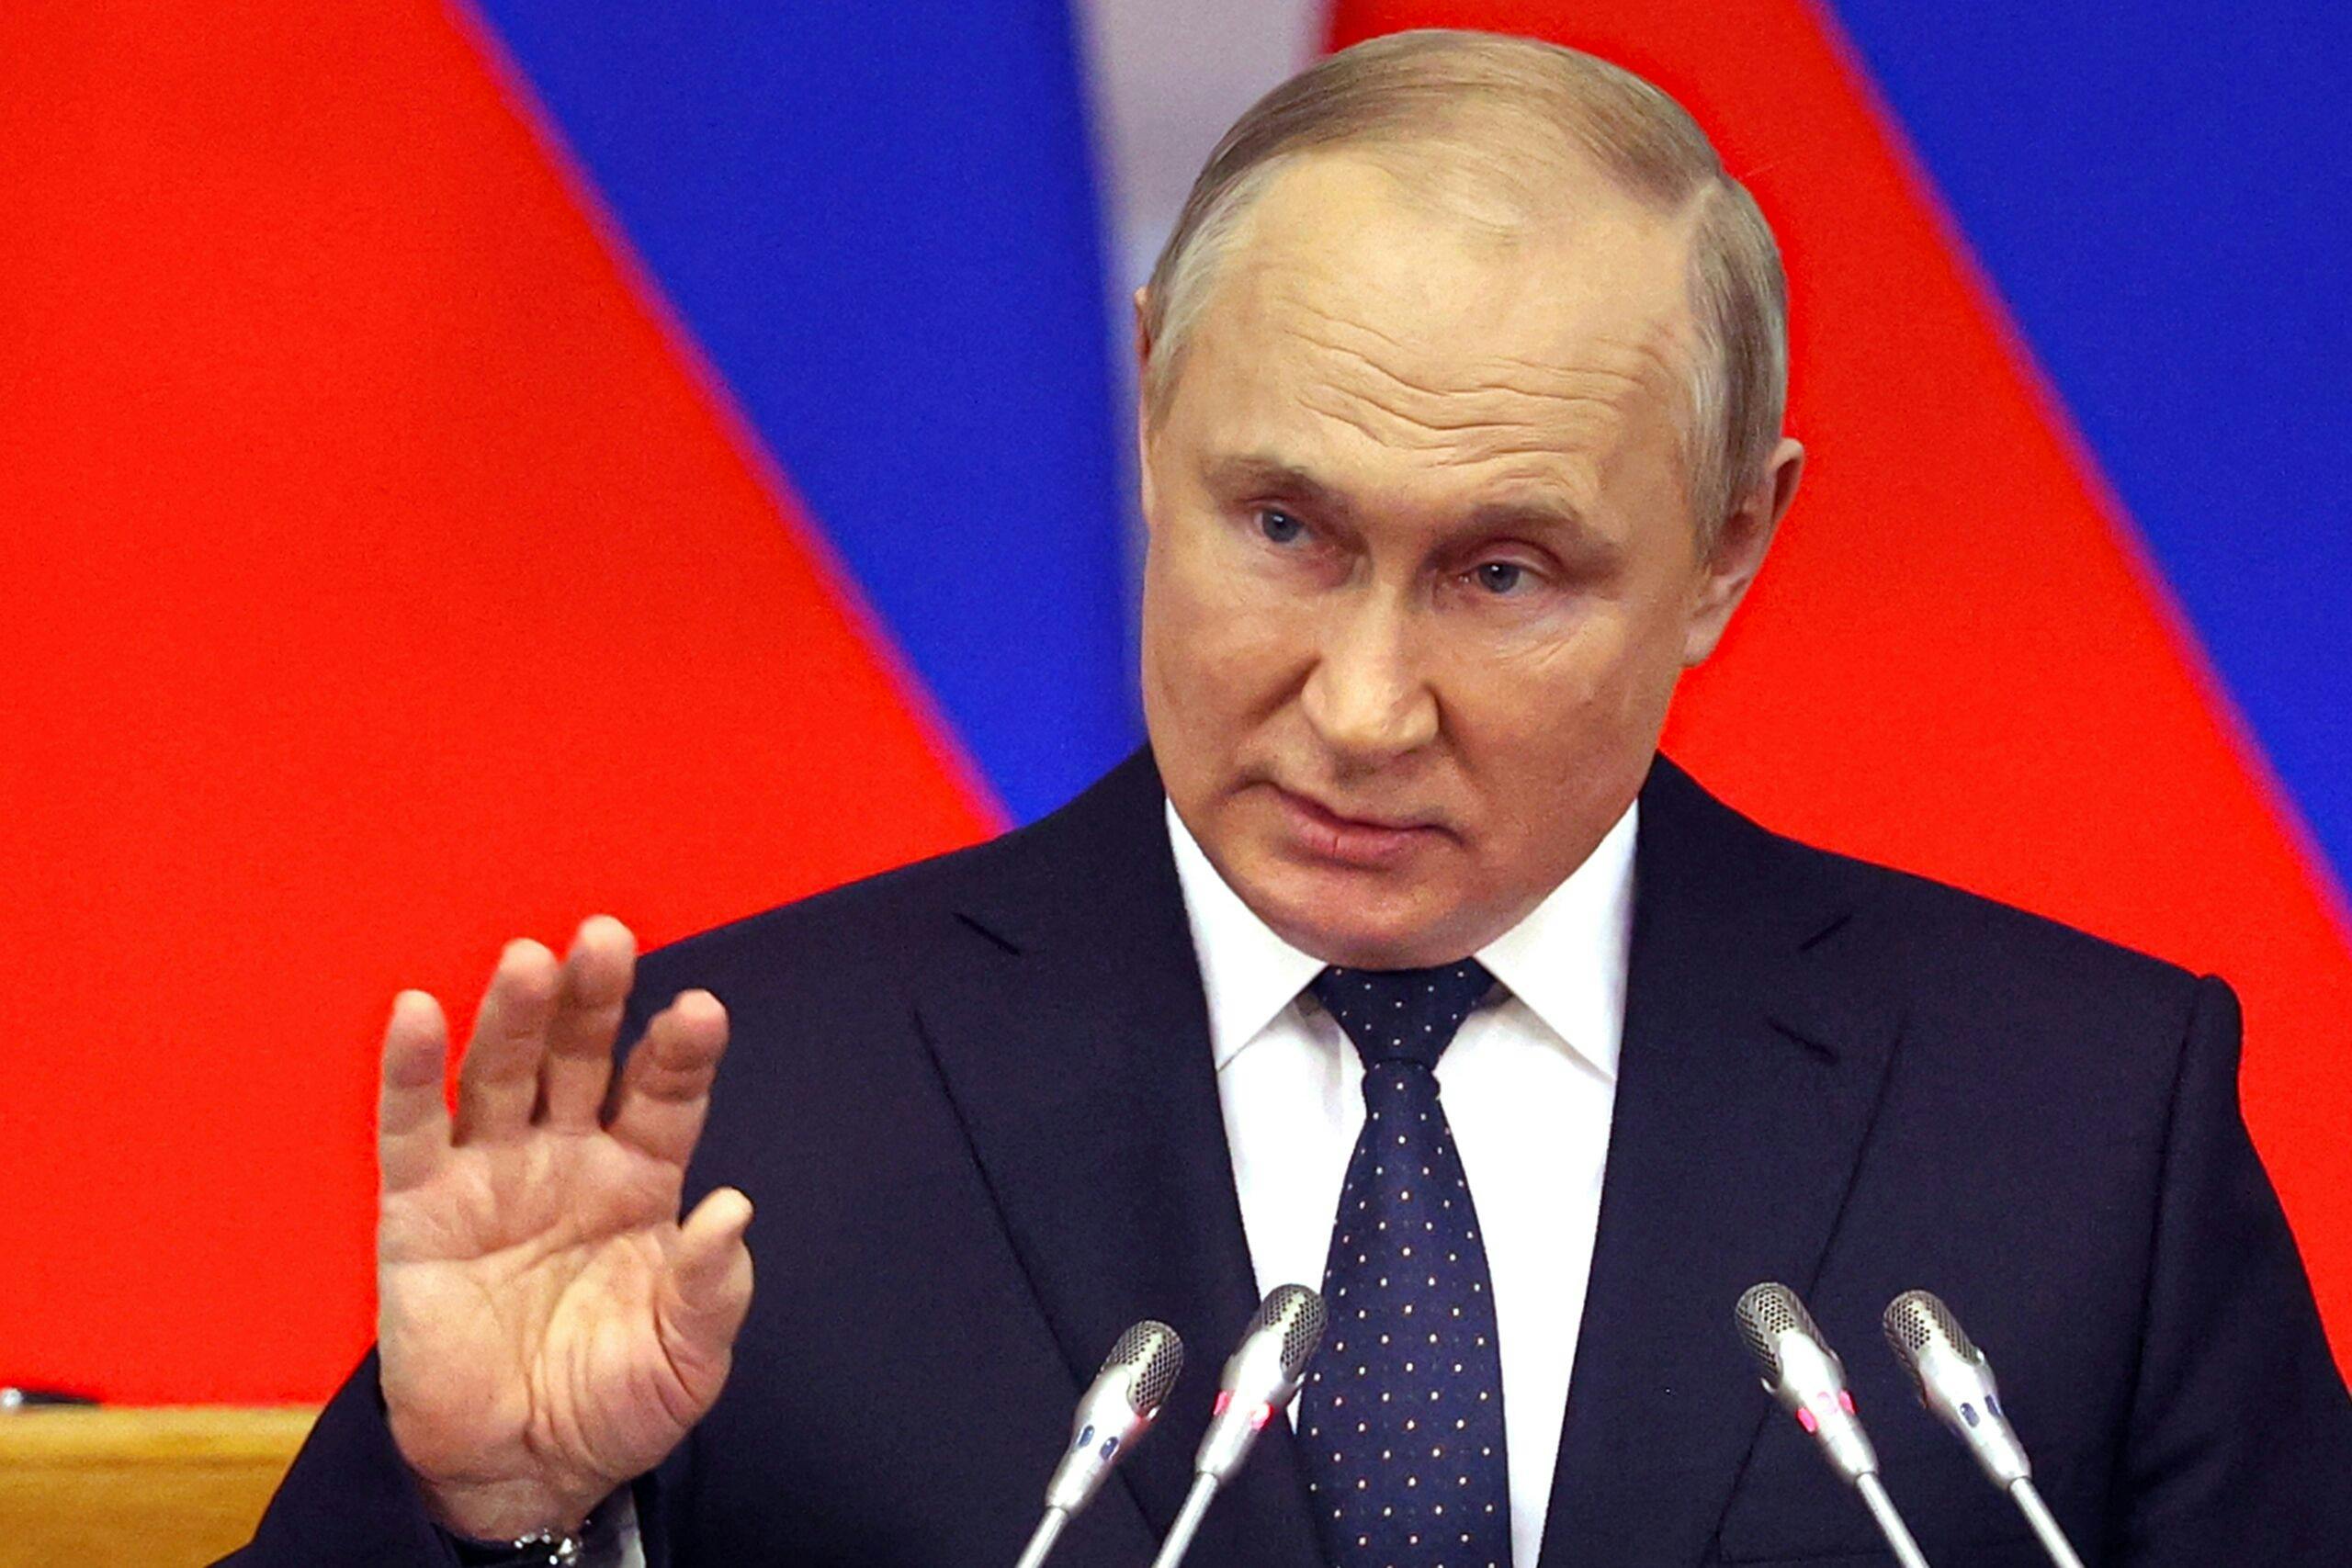 La Russia si allena con armi nucleari fittizie e “allarmistiche”.